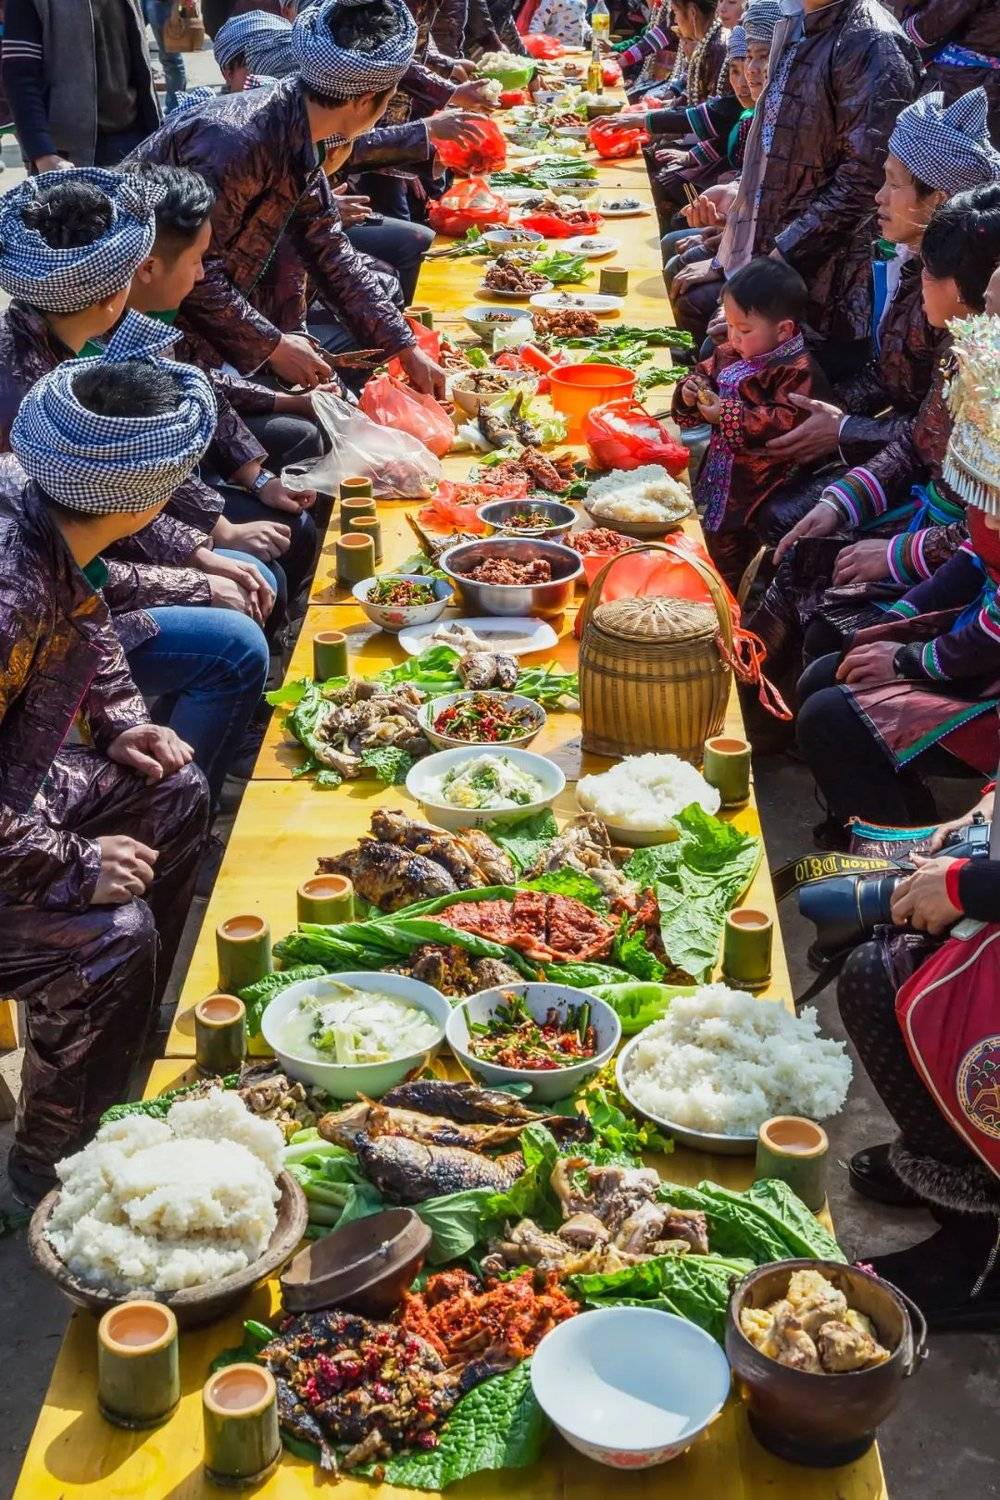 黔东南州黎平县苗族过新年长桌宴。摄影/尹刚